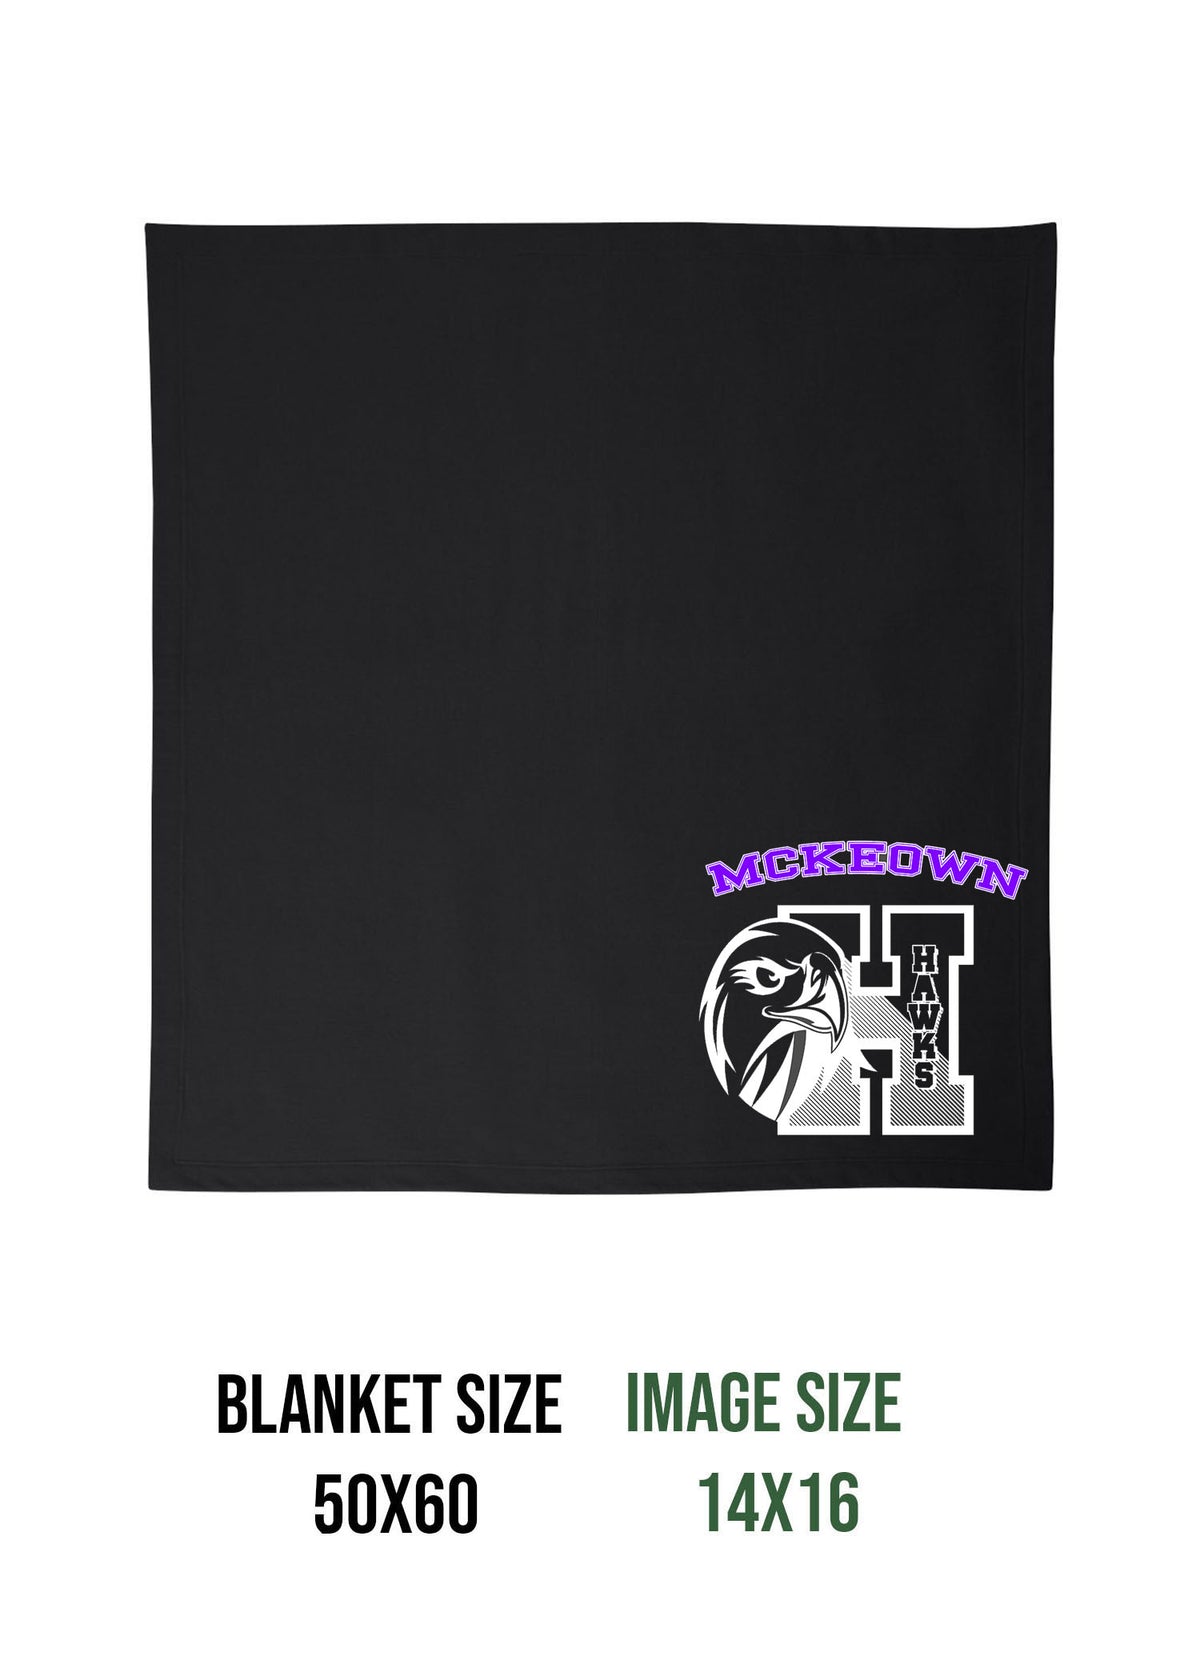 McKeown Design 10 Blanket